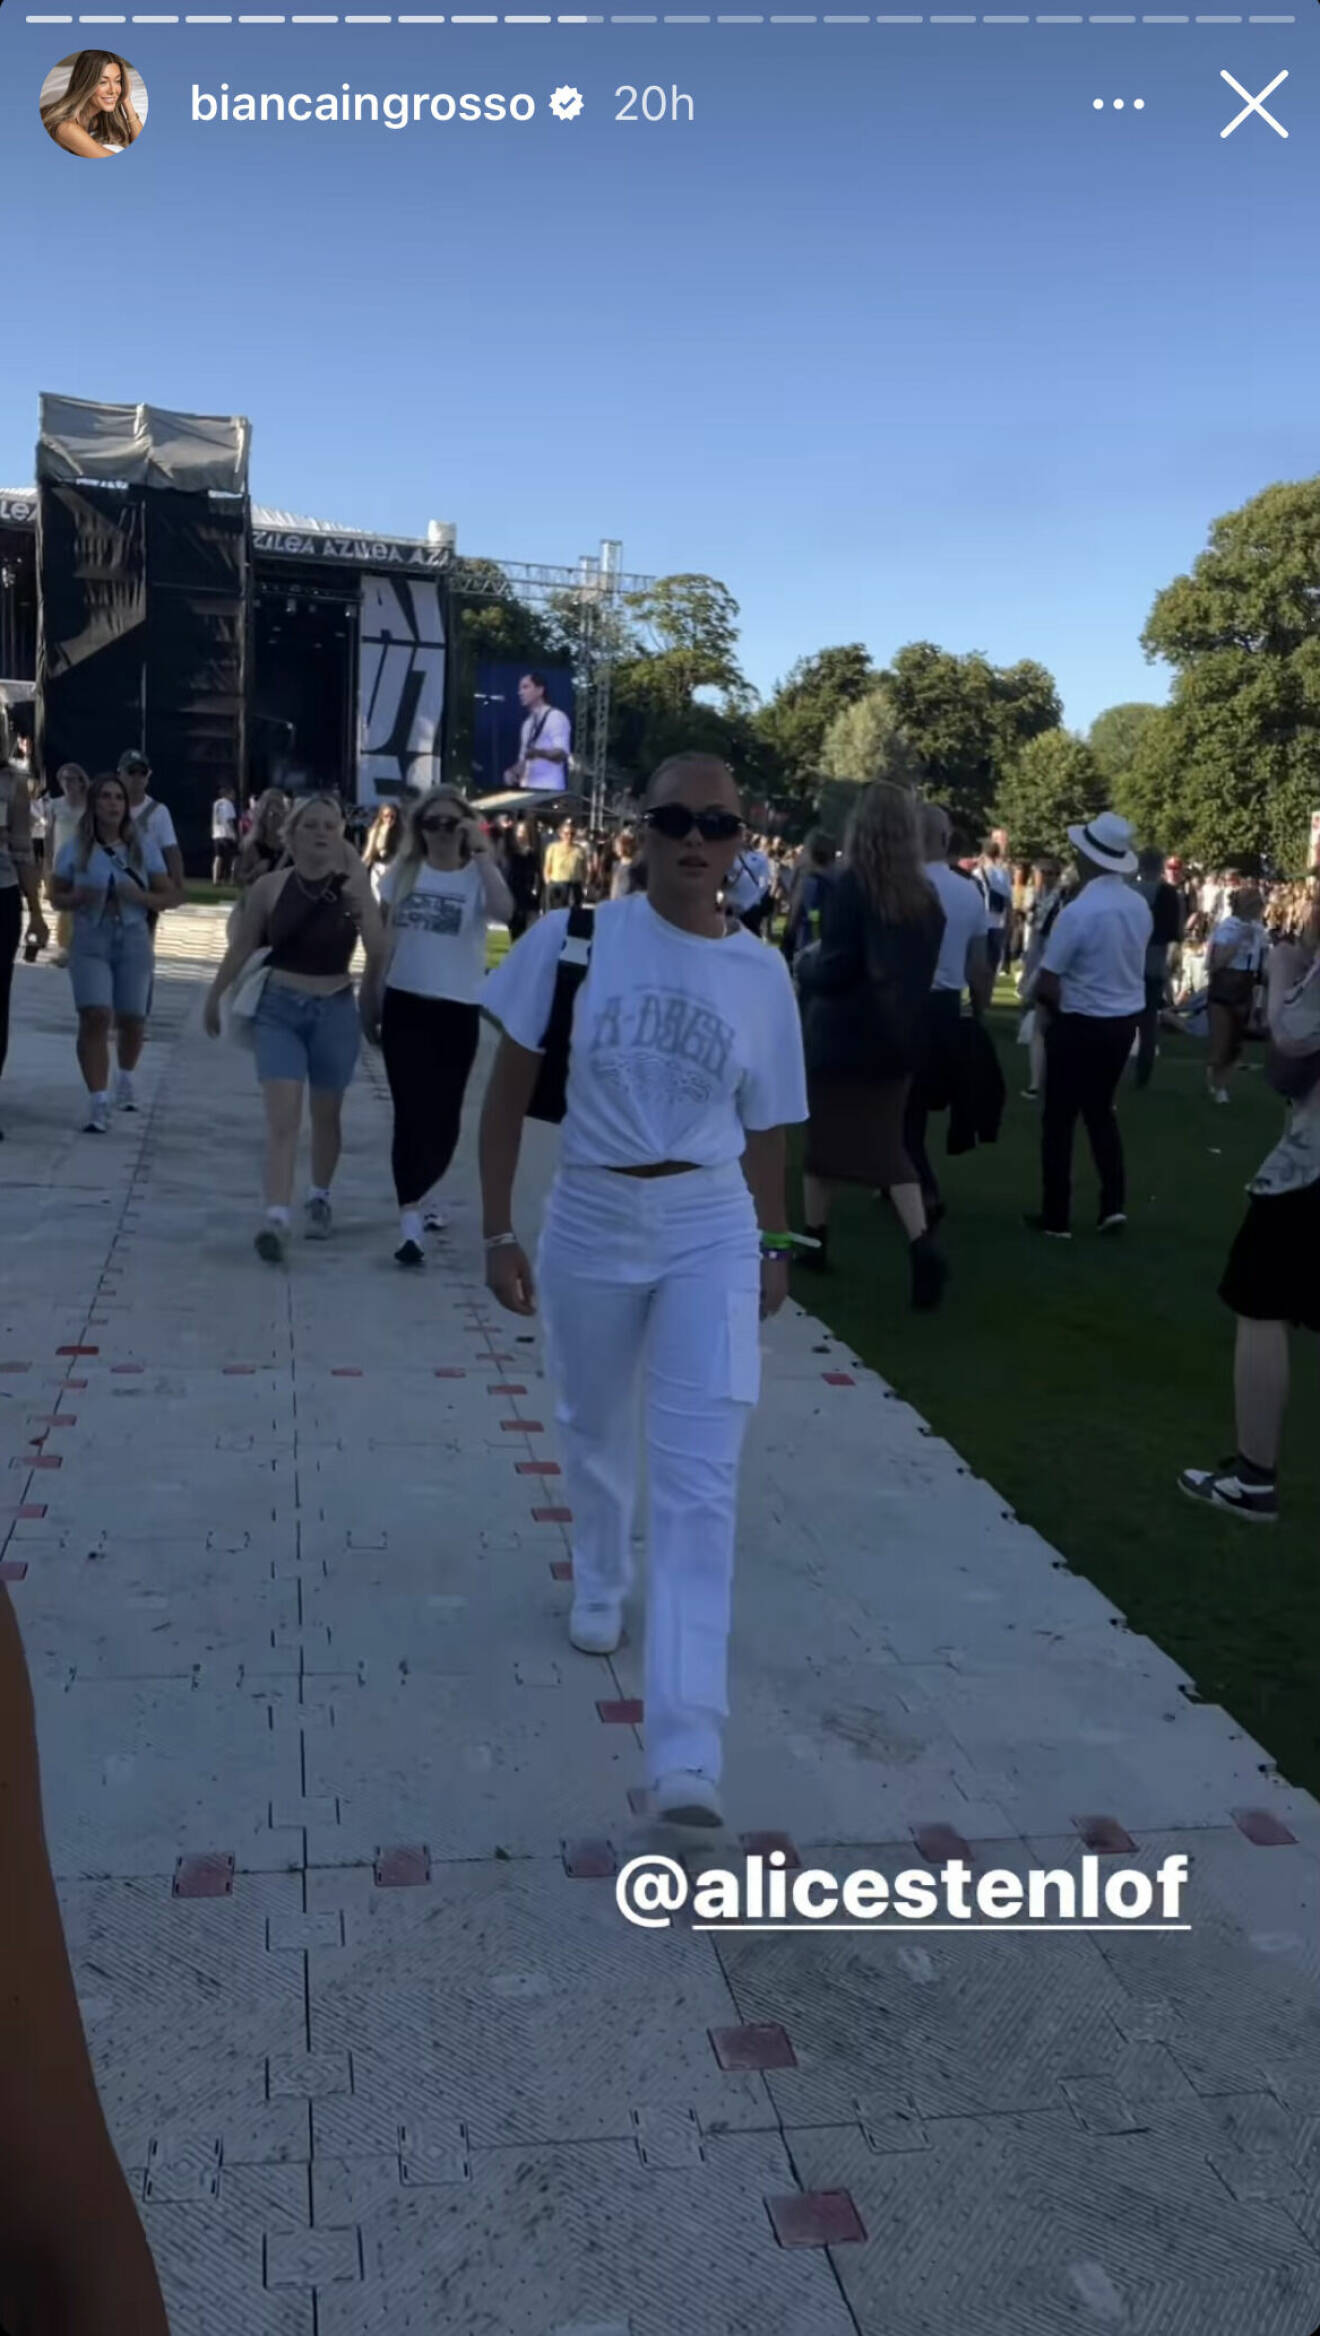 Bianca Ingrosso fångade Alice Stenlöf på bild inne på festivalområdet.